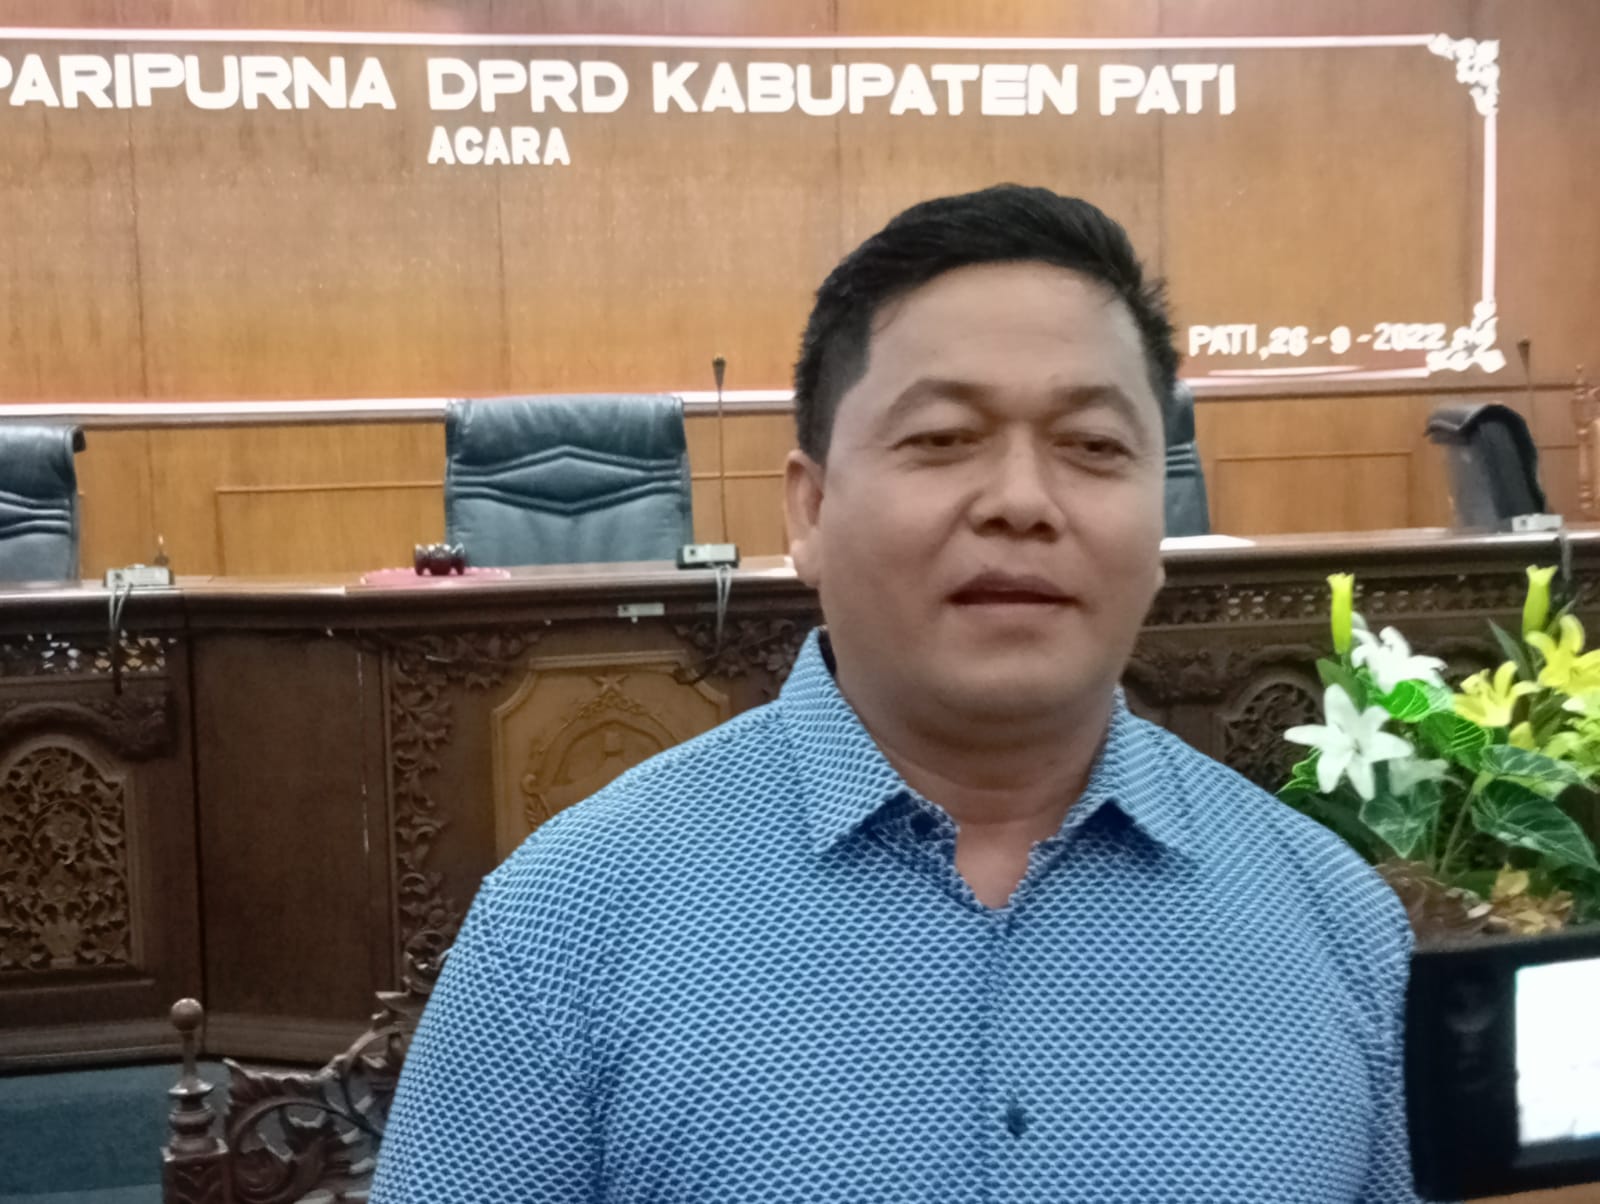 Ketua DPRD Kabupaten Pati, Ali Badrudin